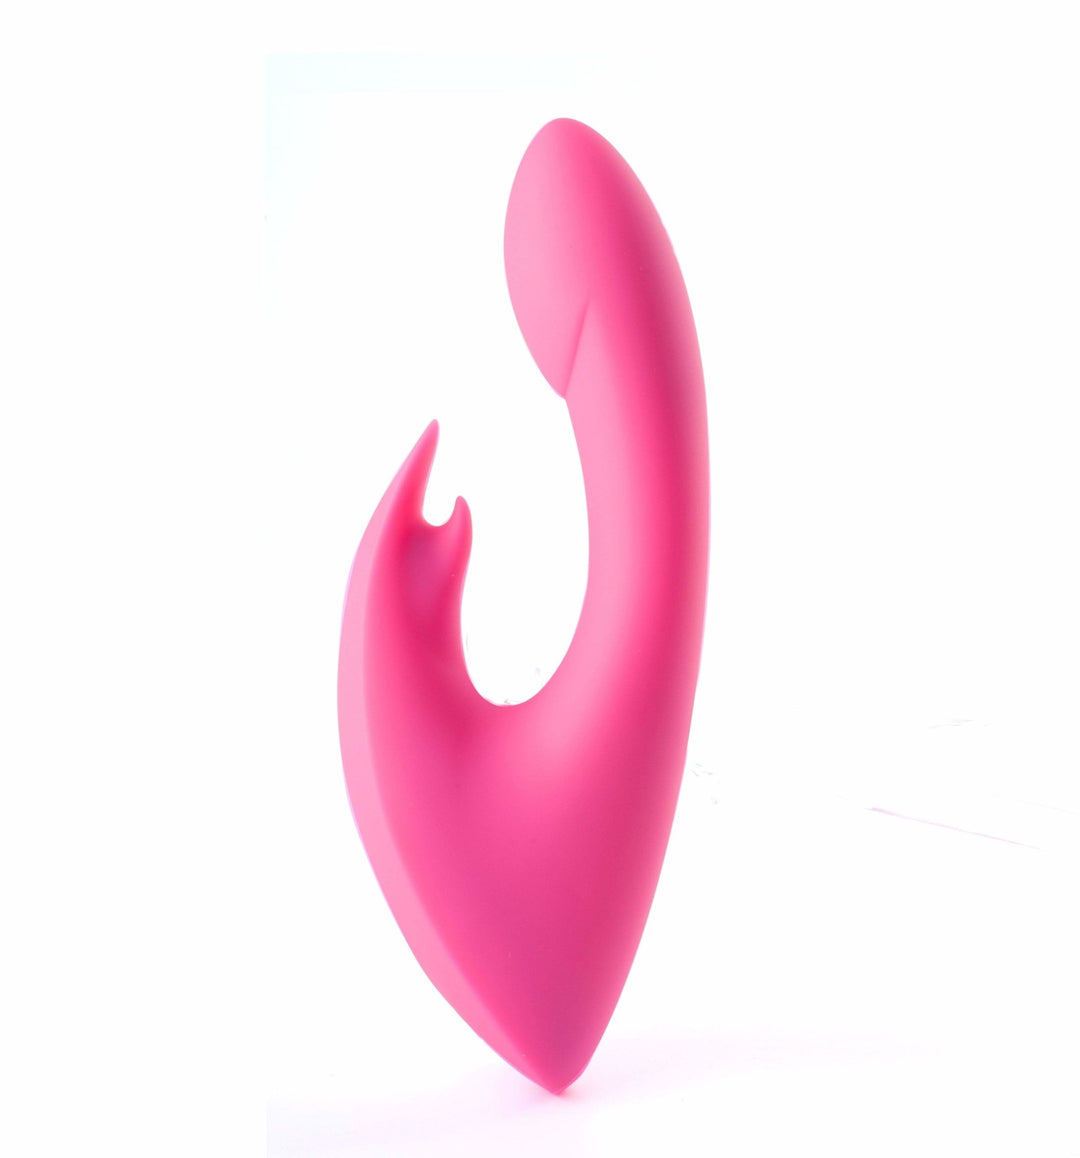 Maia Leah - Pink Rabbit Vibrator